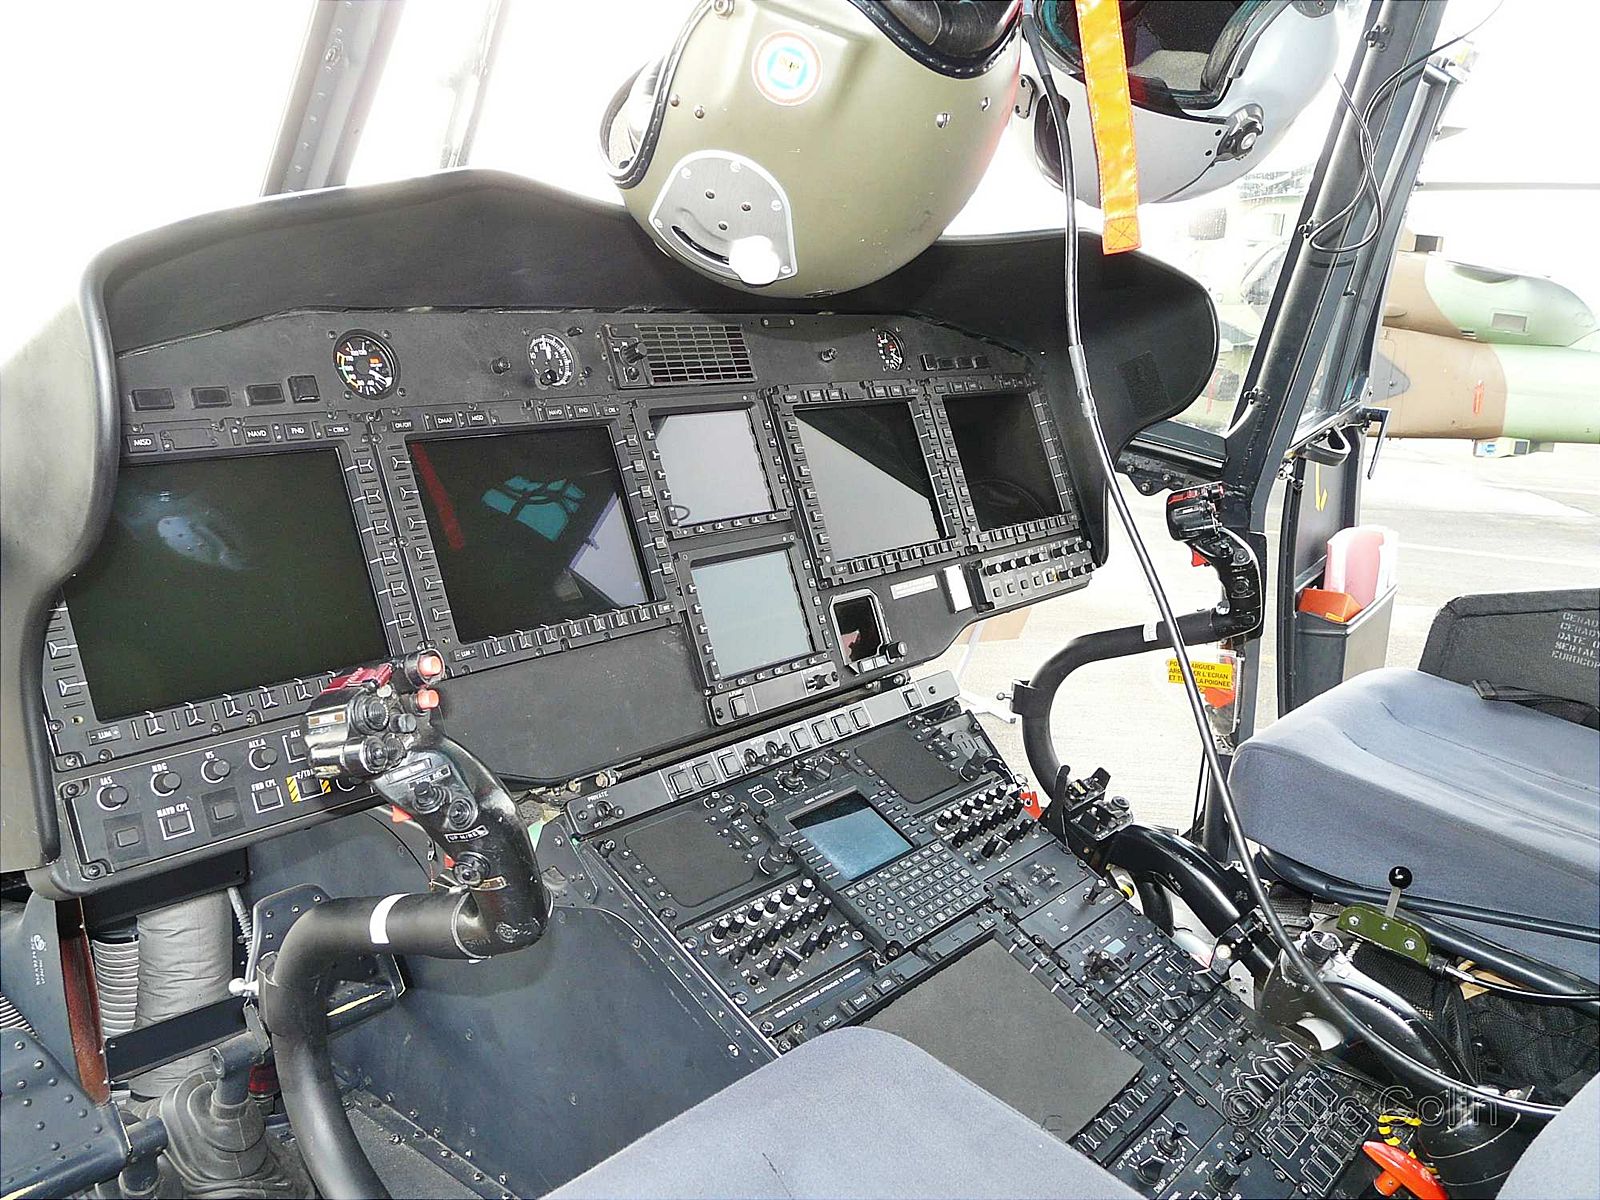 Heli multi-role ini dilengkapi teknologi canggih seperti LCD multi fungsi 6"x8" pada cockpit, terintegrasi dengan peta digital/peperangan elektronik, full glass cockpit, dan lain-lain